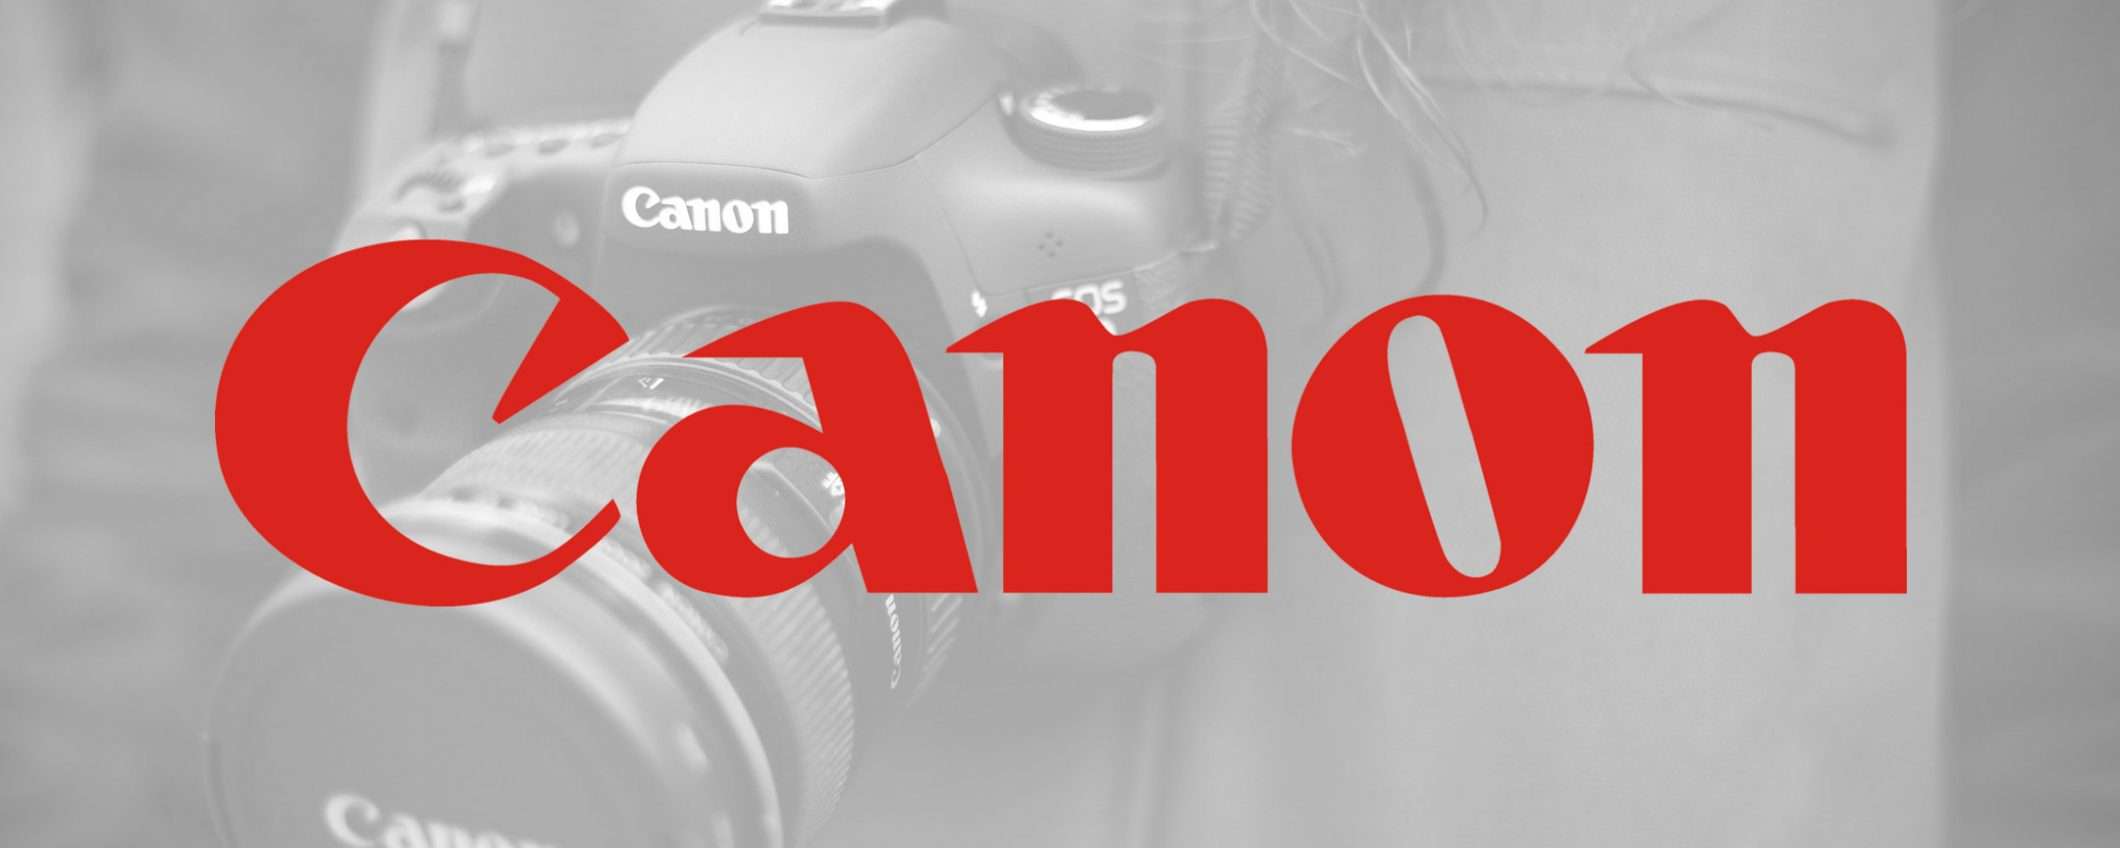 La reflex o mirrorless Canon al posto della webcam